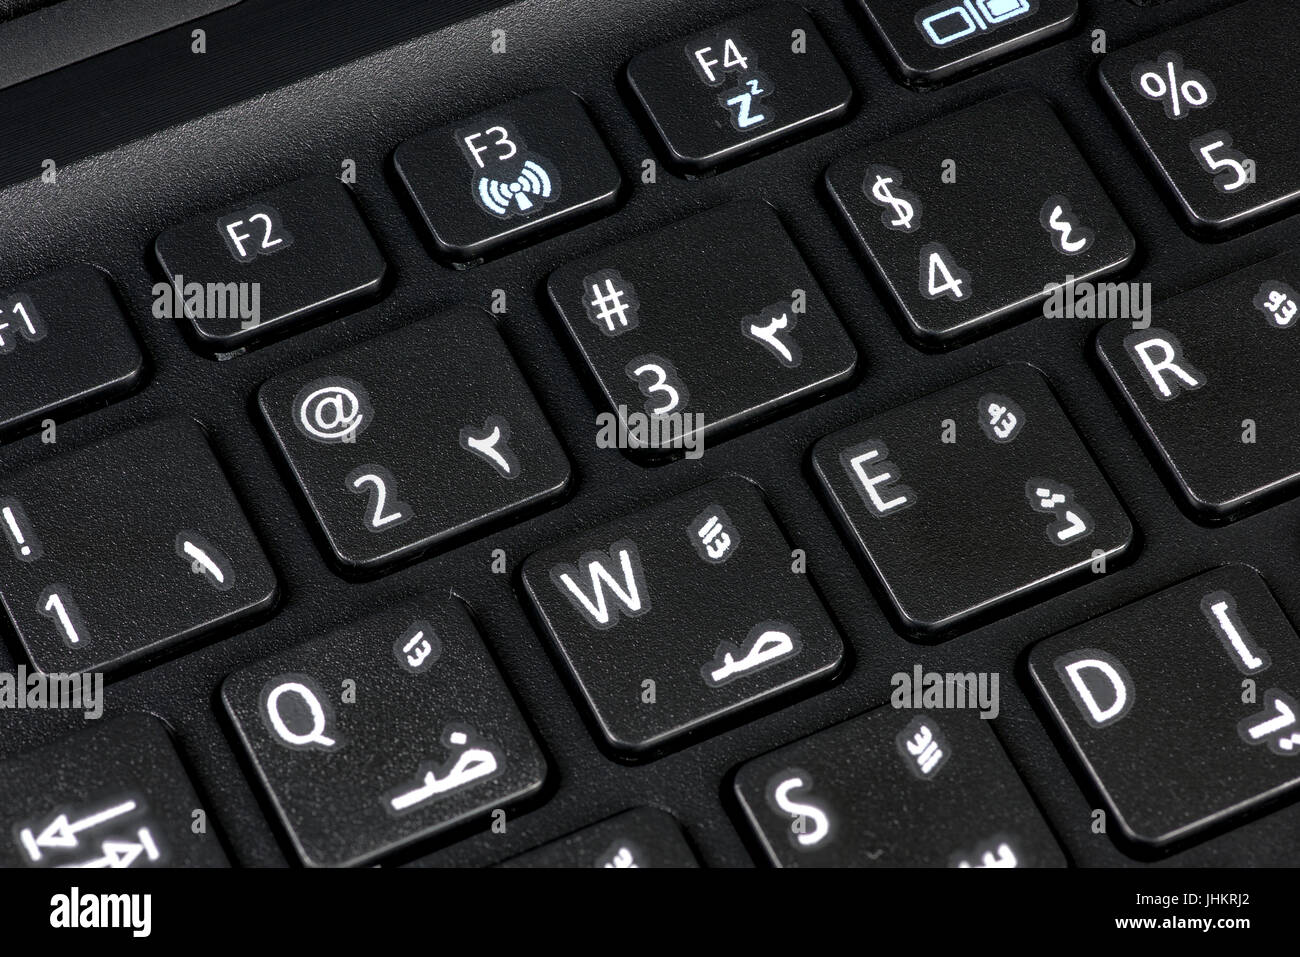 Nahaufnahme einer QWERTY-Tastatur Englisch und Arabisch mit Buchstaben,  Zahlen und Symbole Stockfotografie - Alamy